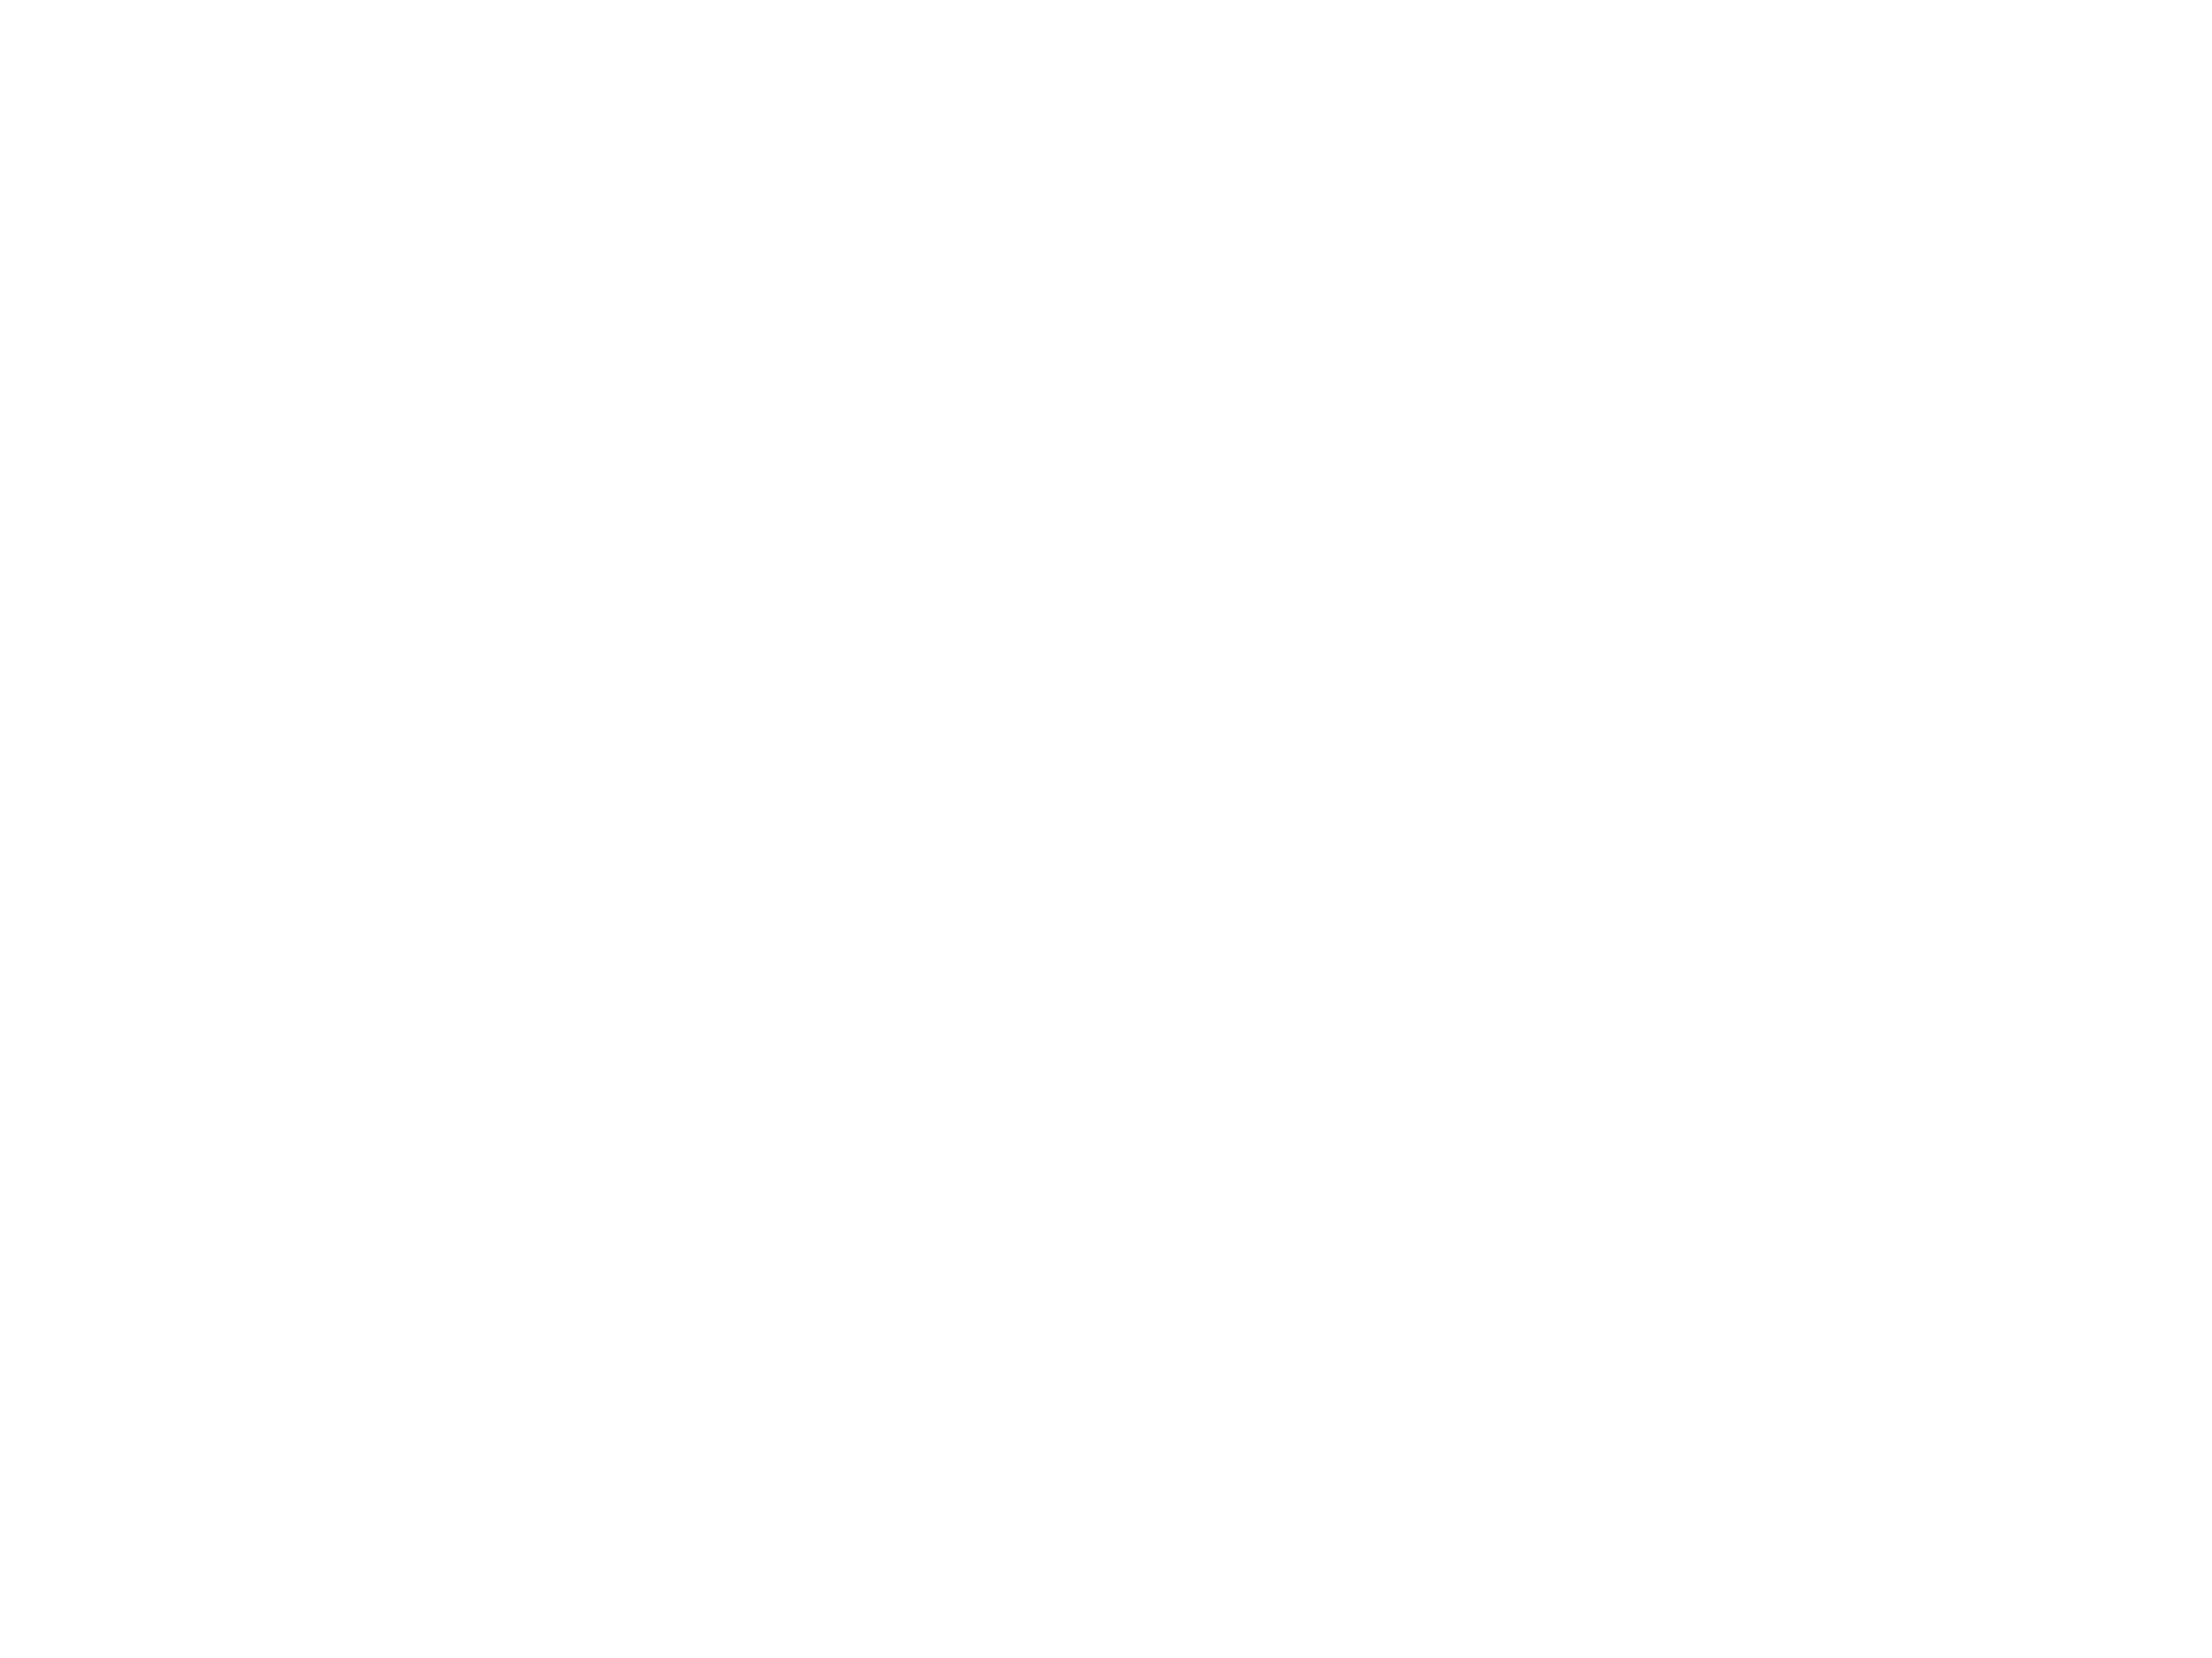 AI Summit London Logo on Dark